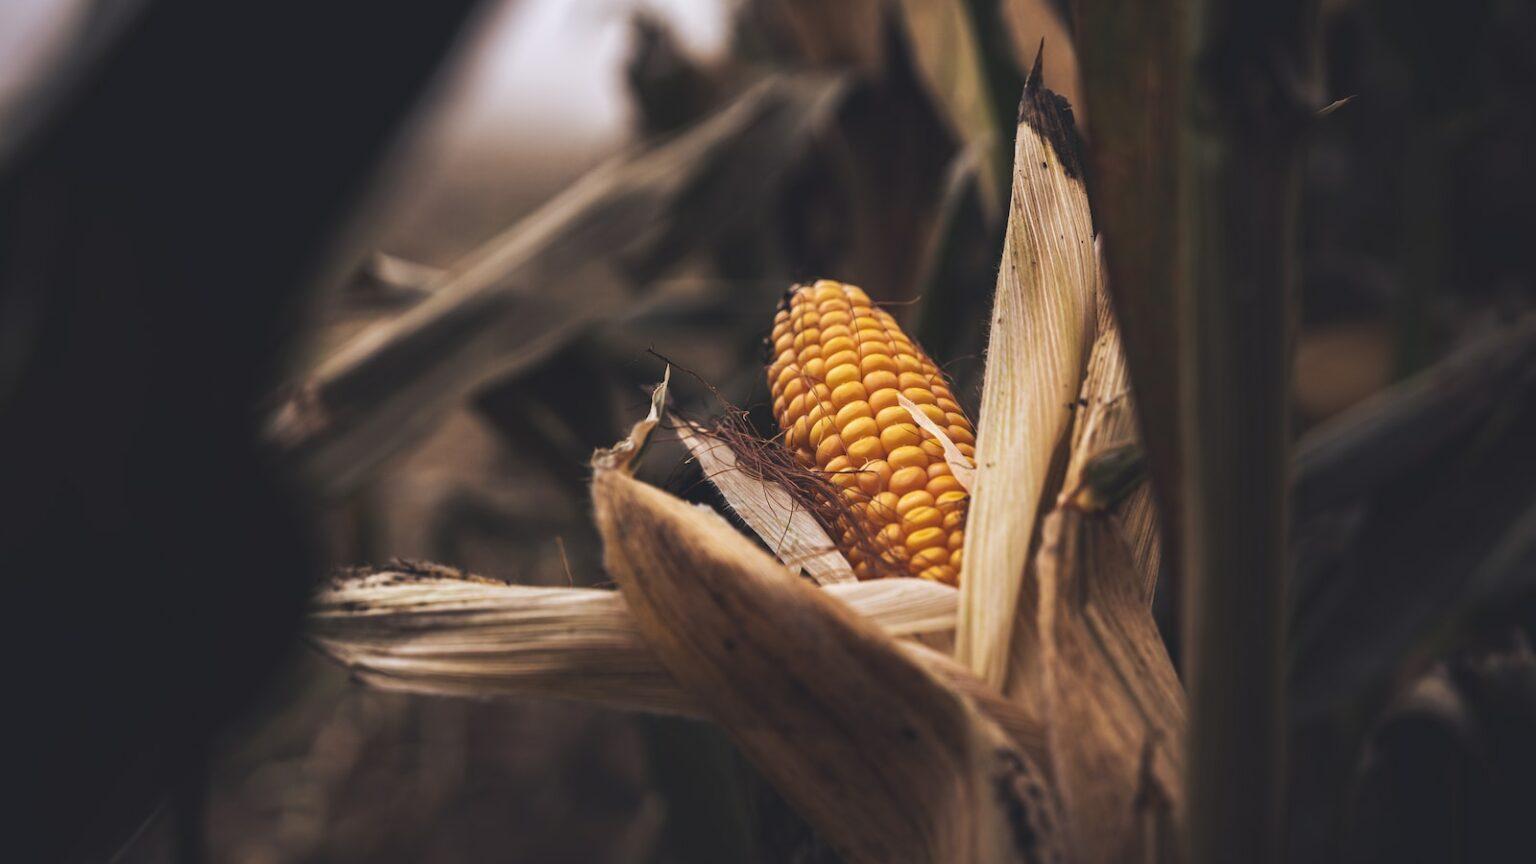 a close up of a corn cob in a field